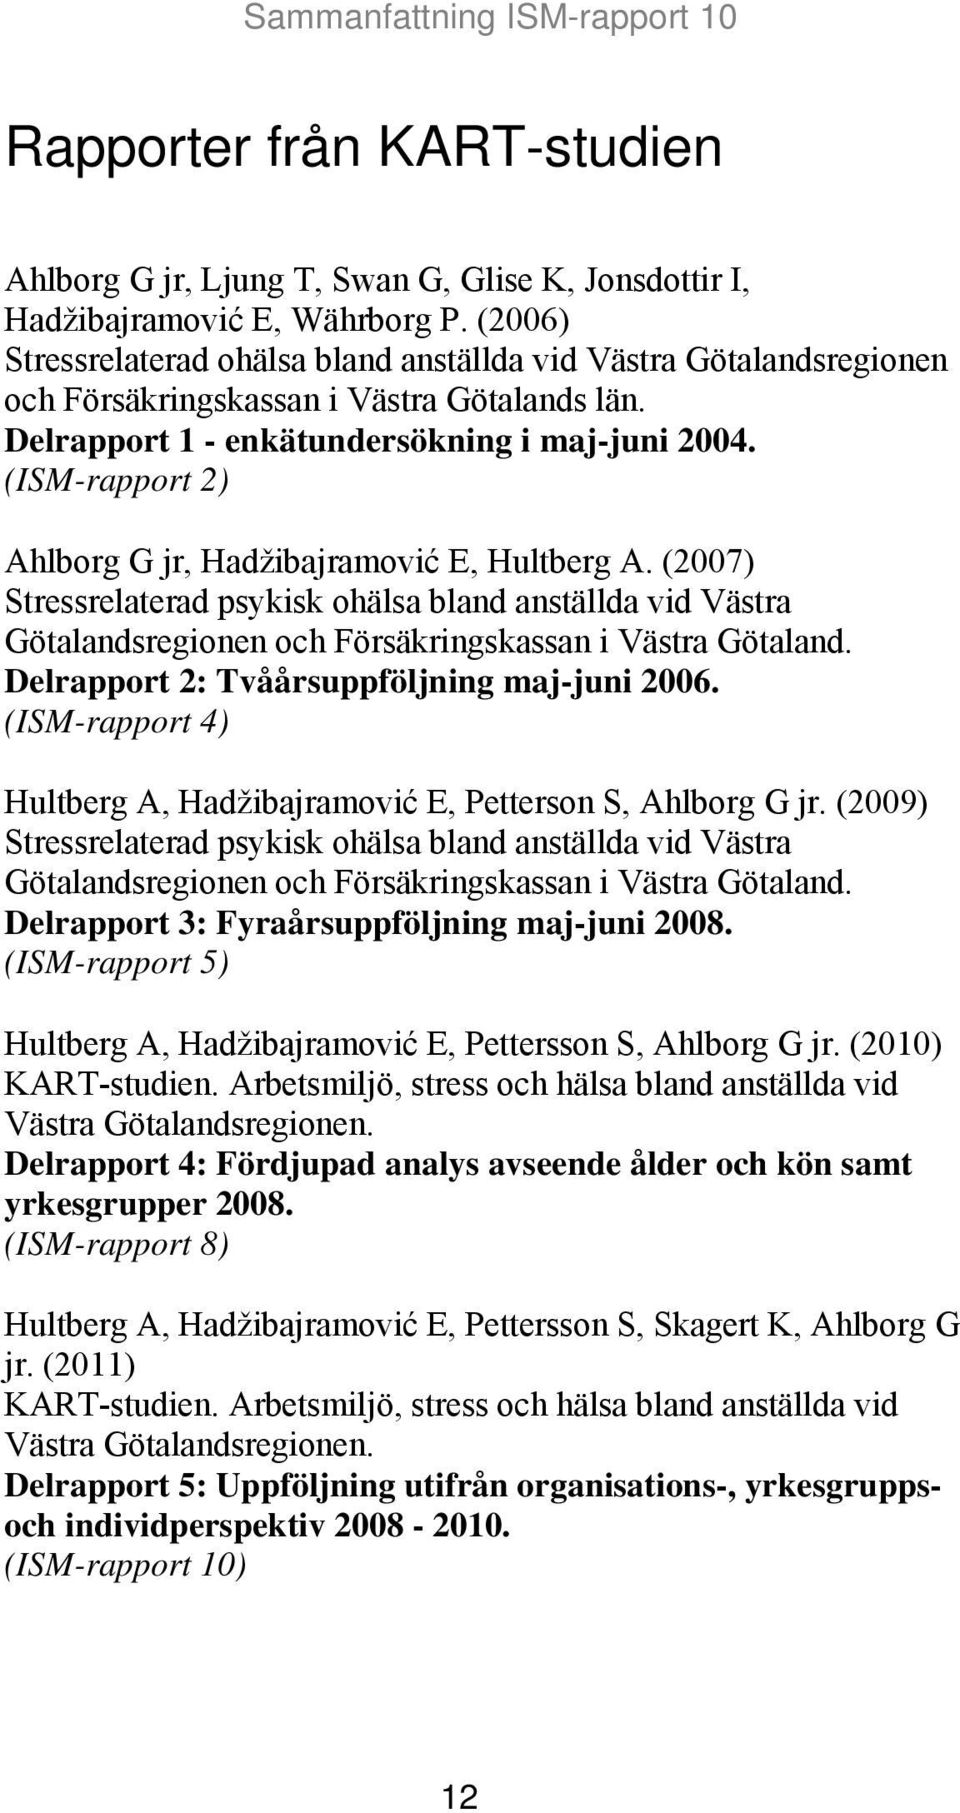 (ISM-rapport 2) Ahlborg G jr, Hadžibajramović E, Hultberg A. (2007) Stressrelaterad psykisk ohälsa bland anställda vid Västra Götalandsregionen och Försäkringskassan i Västra Götaland.